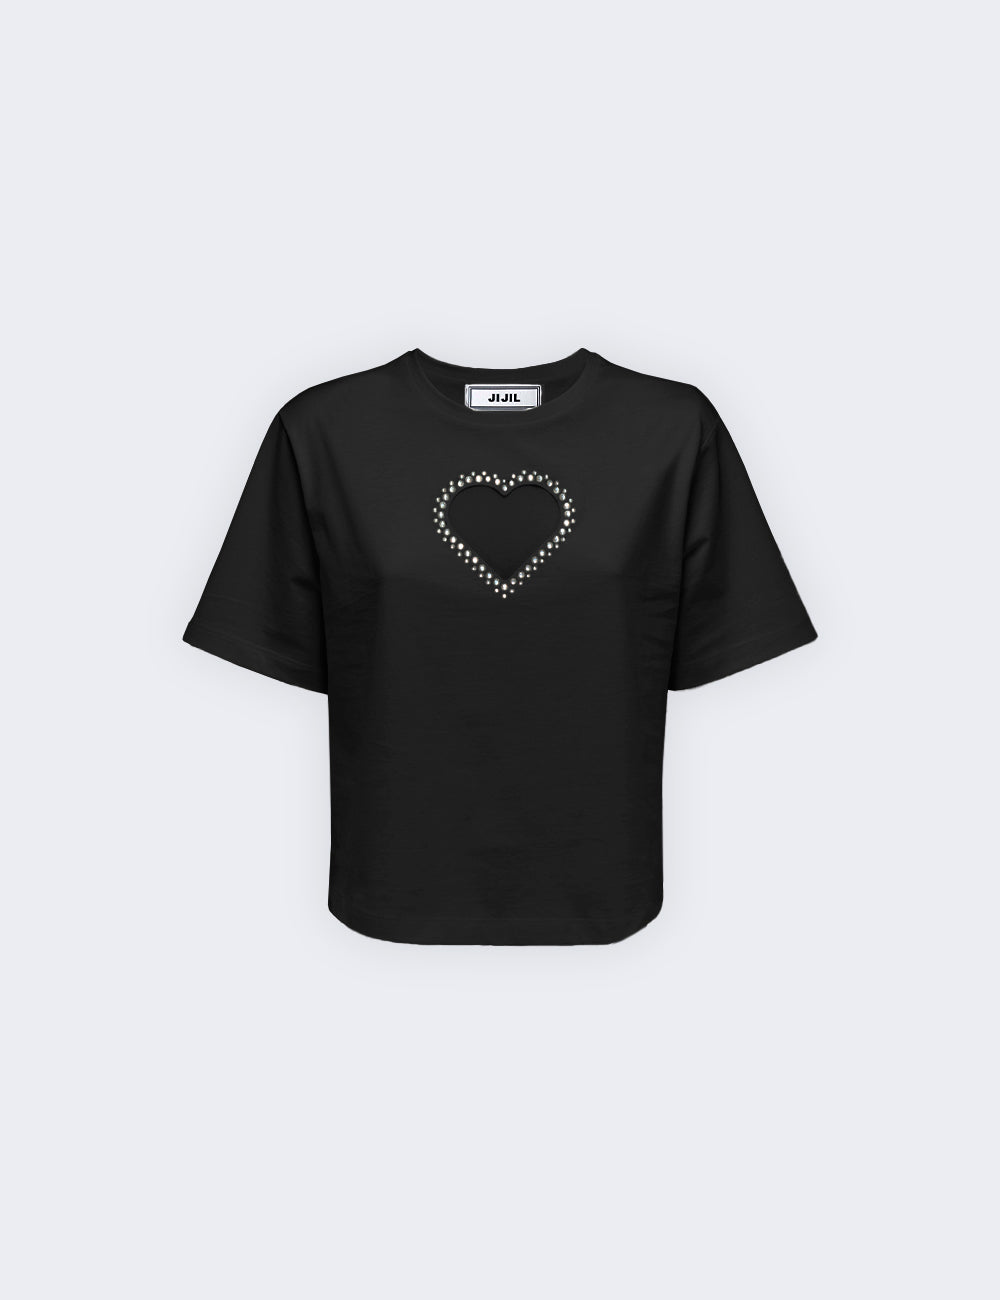 Camiseta com inserção de coração